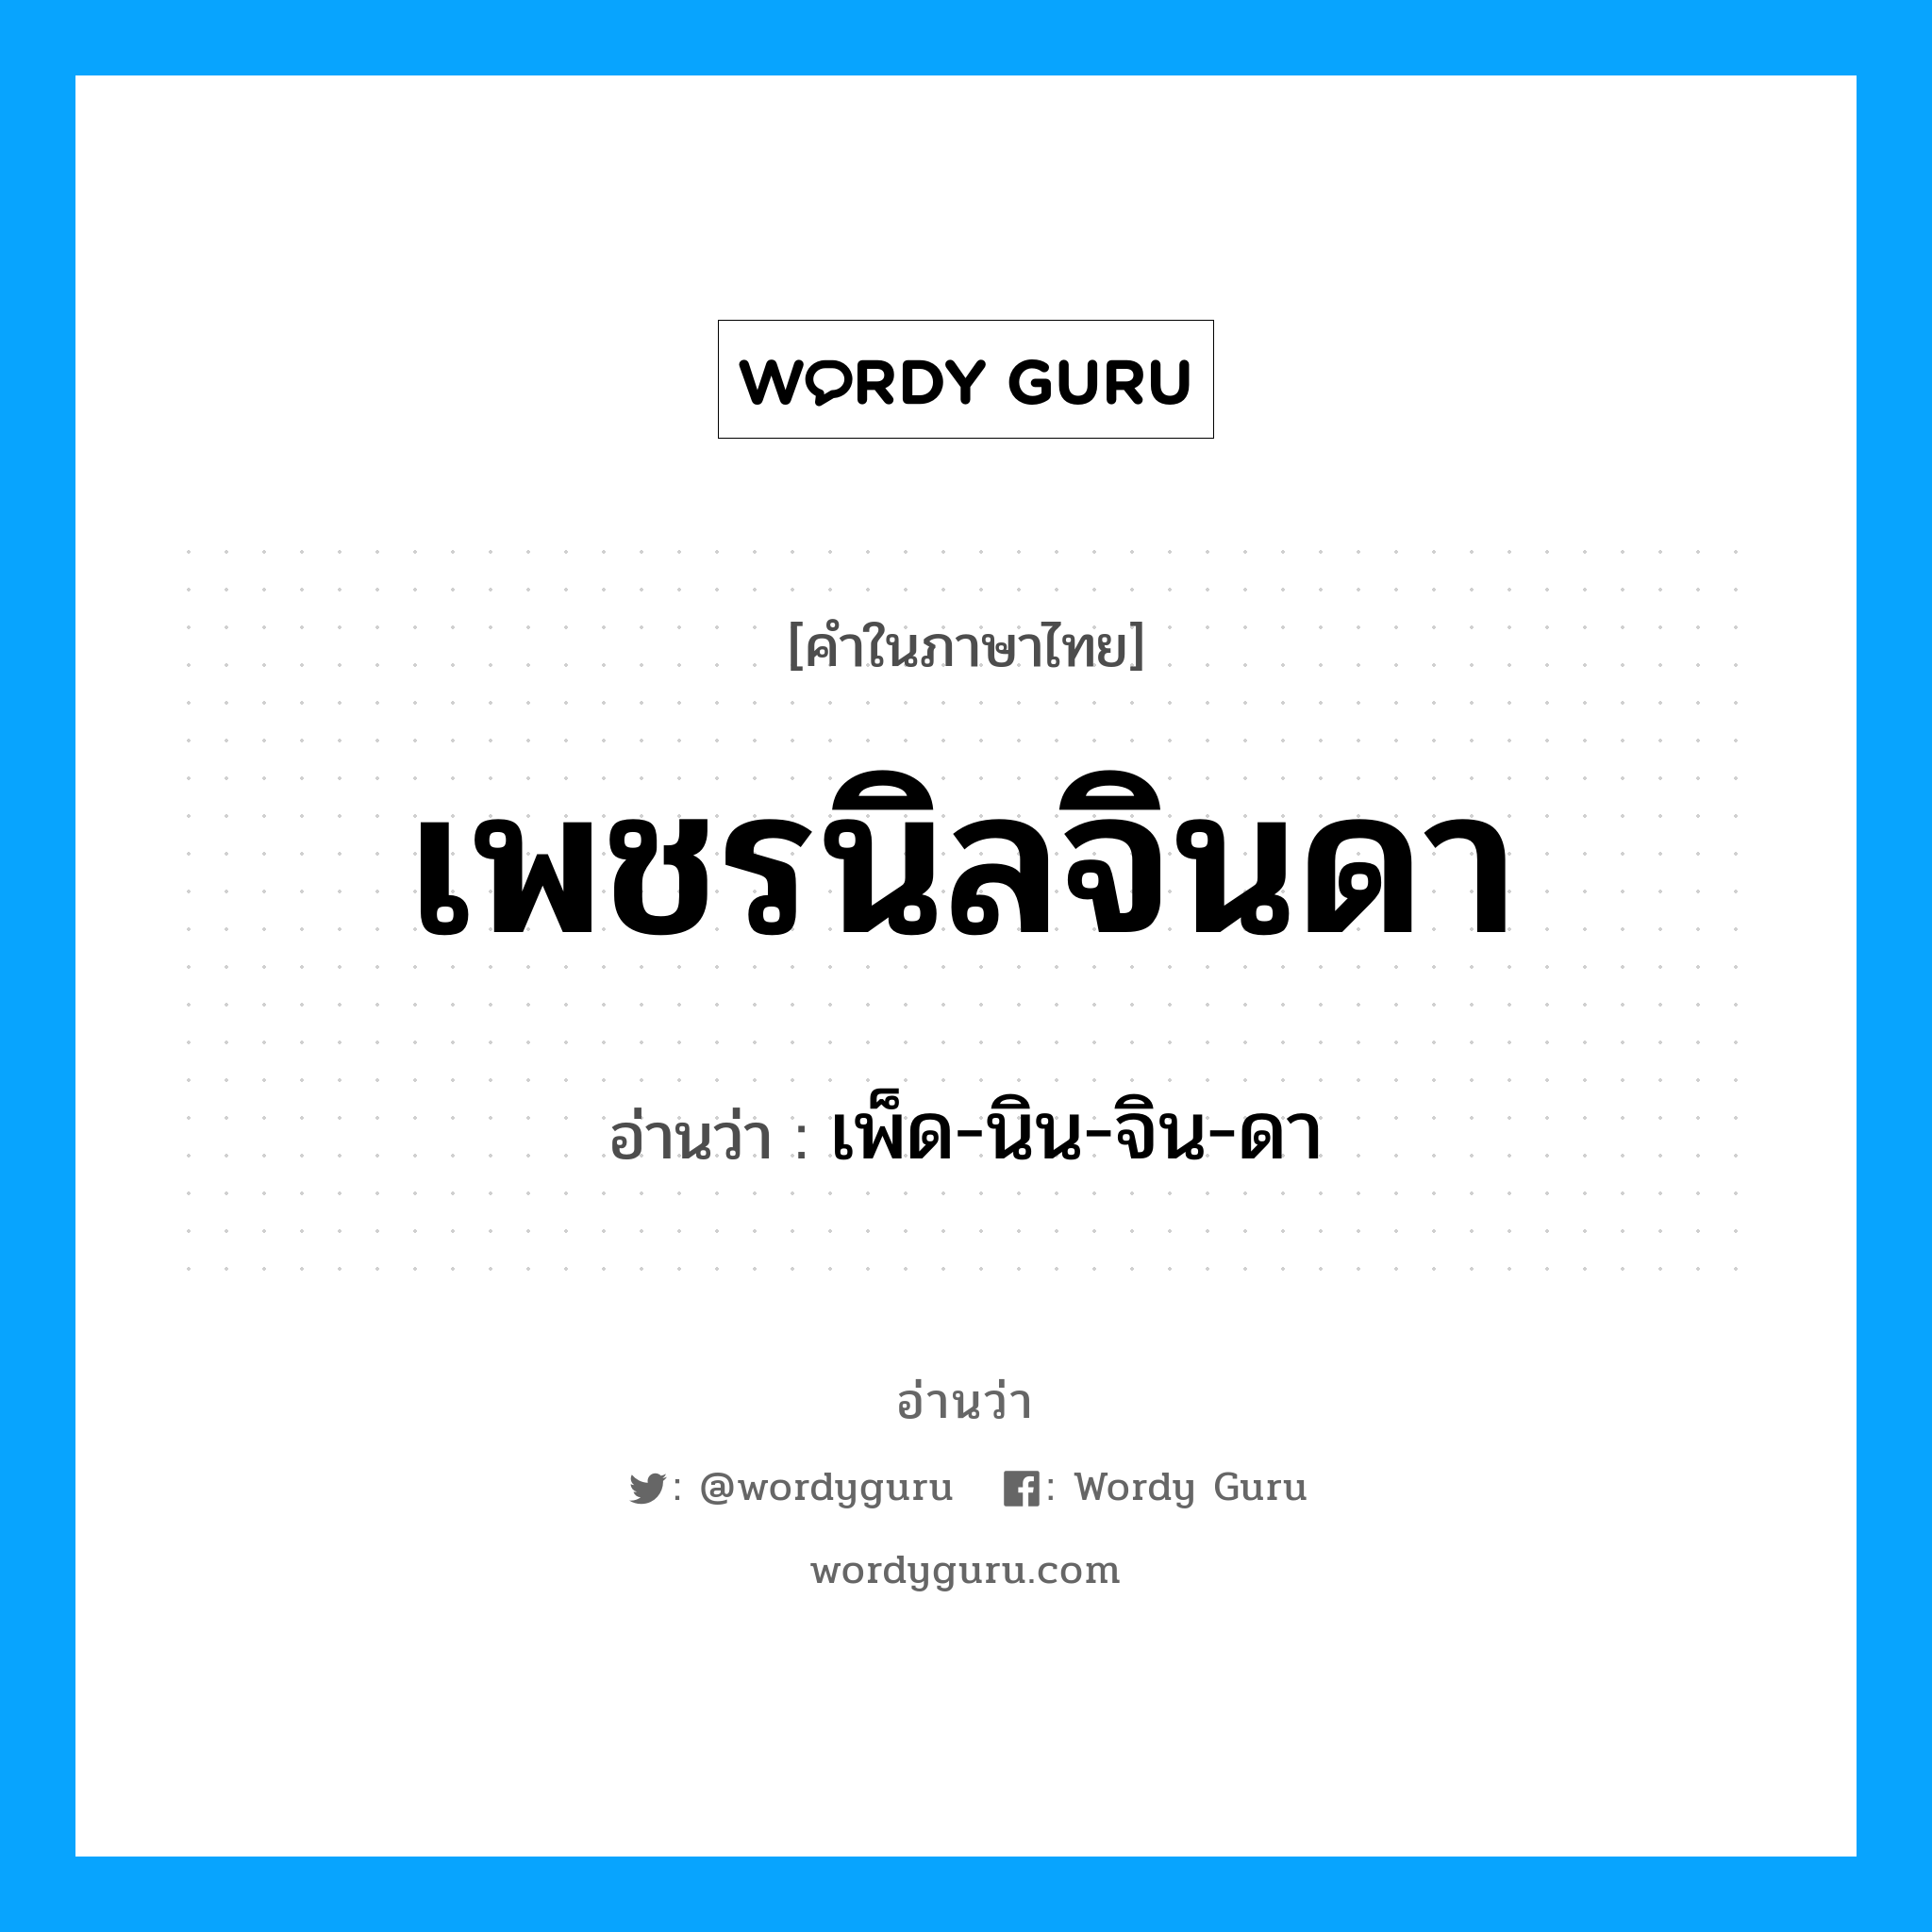 เพ็ด-นิน-จิน-ดา เป็นคำอ่านของคำไหน?, คำในภาษาไทย เพ็ด-นิน-จิน-ดา อ่านว่า เพชรนิลจินดา